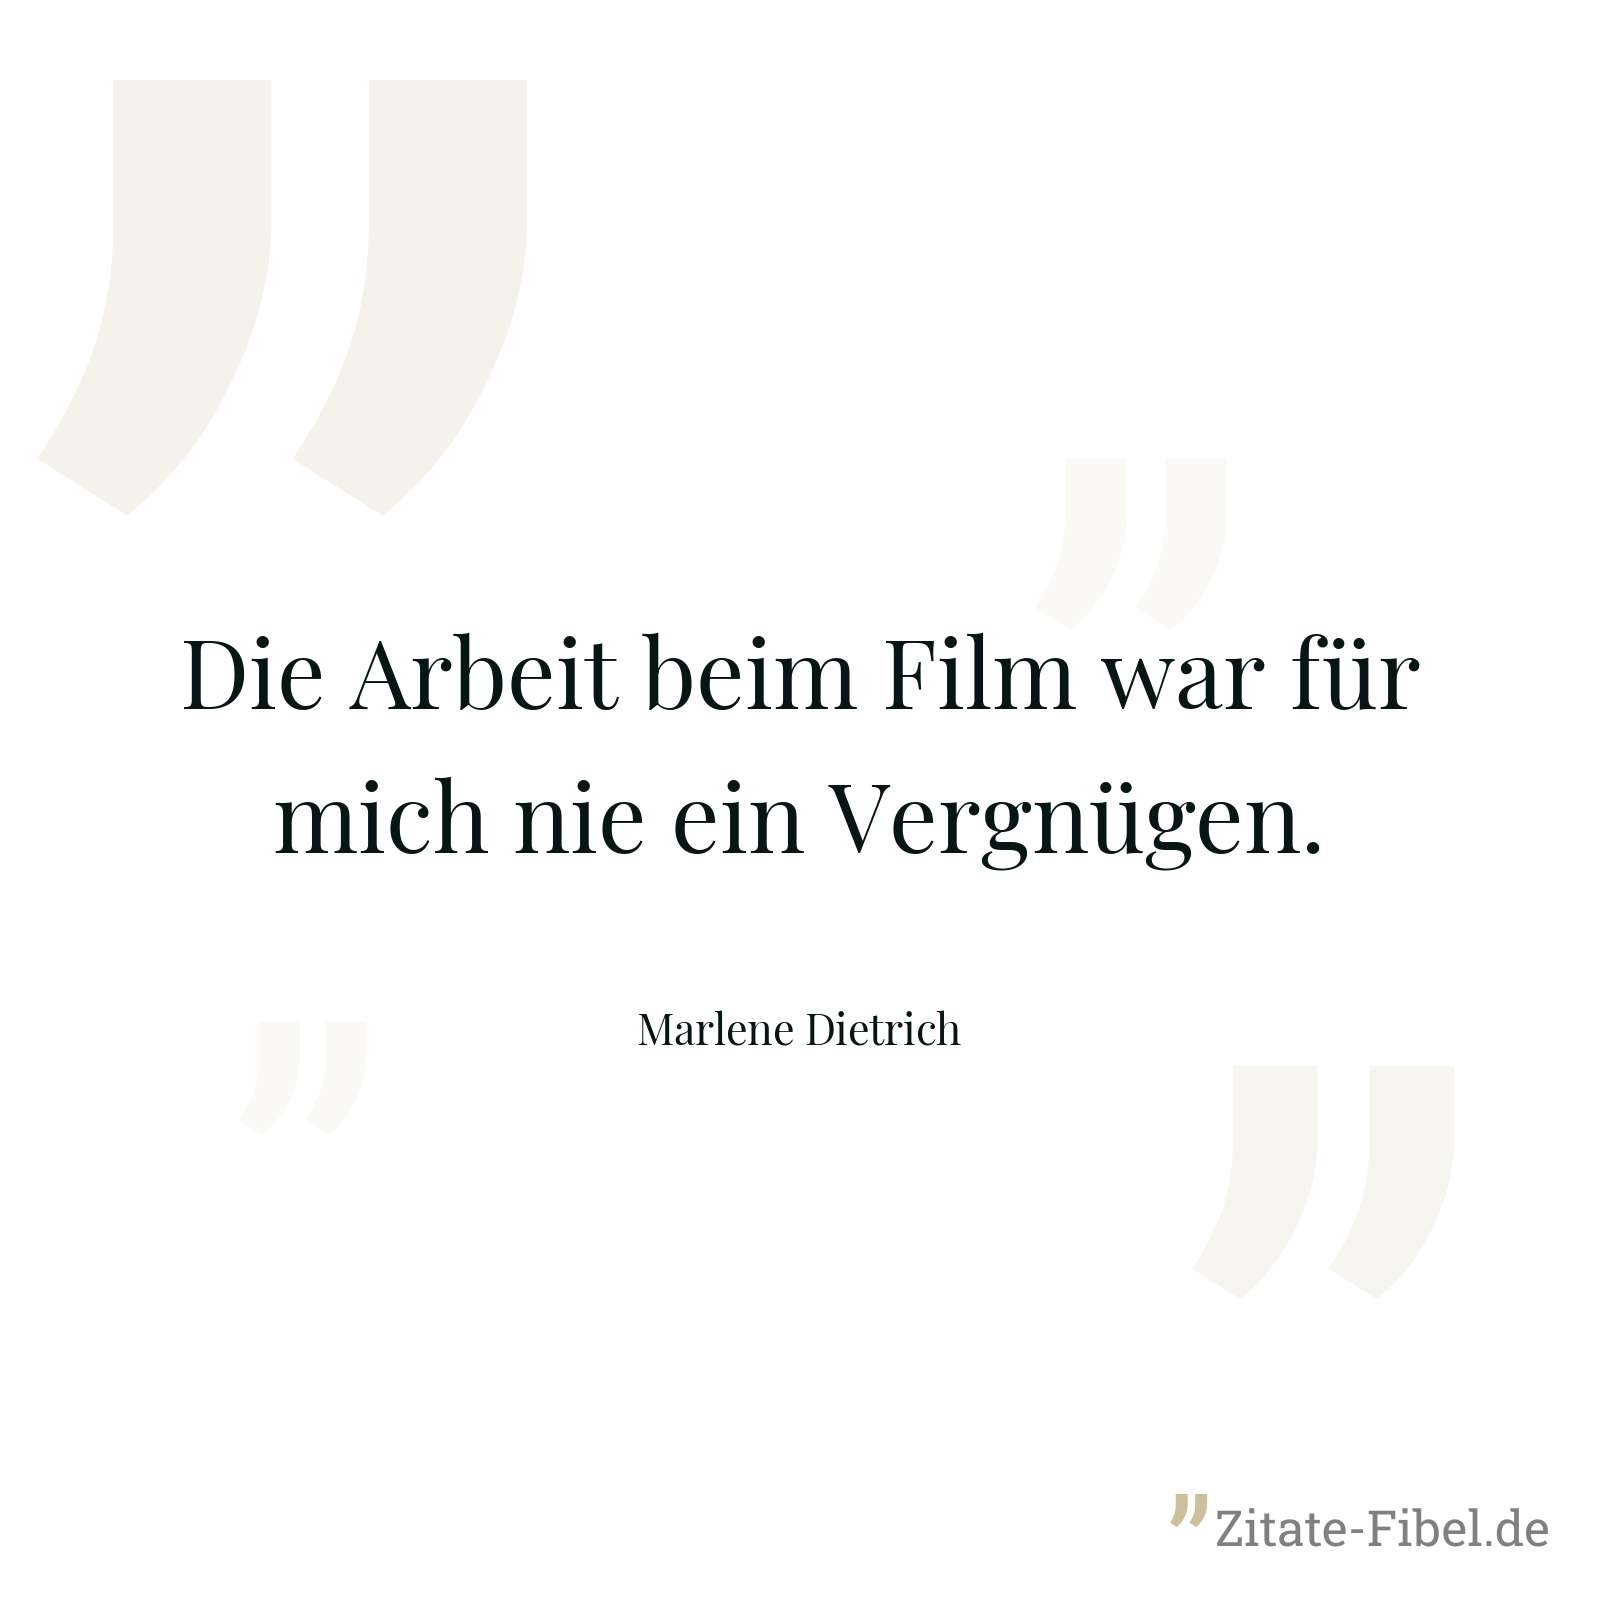 Die Arbeit beim Film war für mich nie ein Vergnügen. - Marlene Dietrich